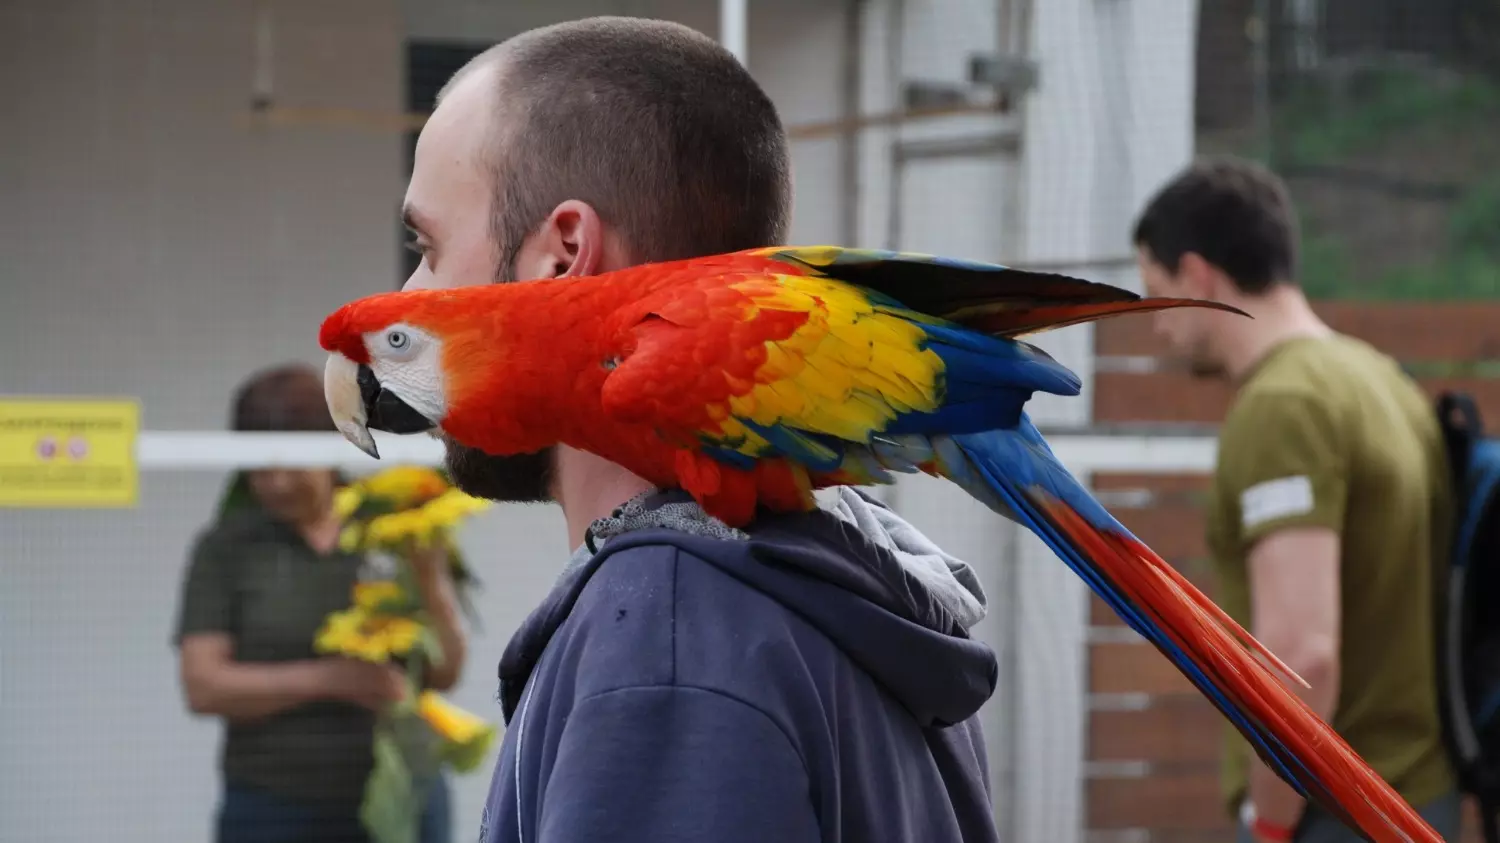 В качестве интересных мест для отдыха в Ростовской области, опрошенные туристы рекомендуют Южный парк птиц «Малинки». 